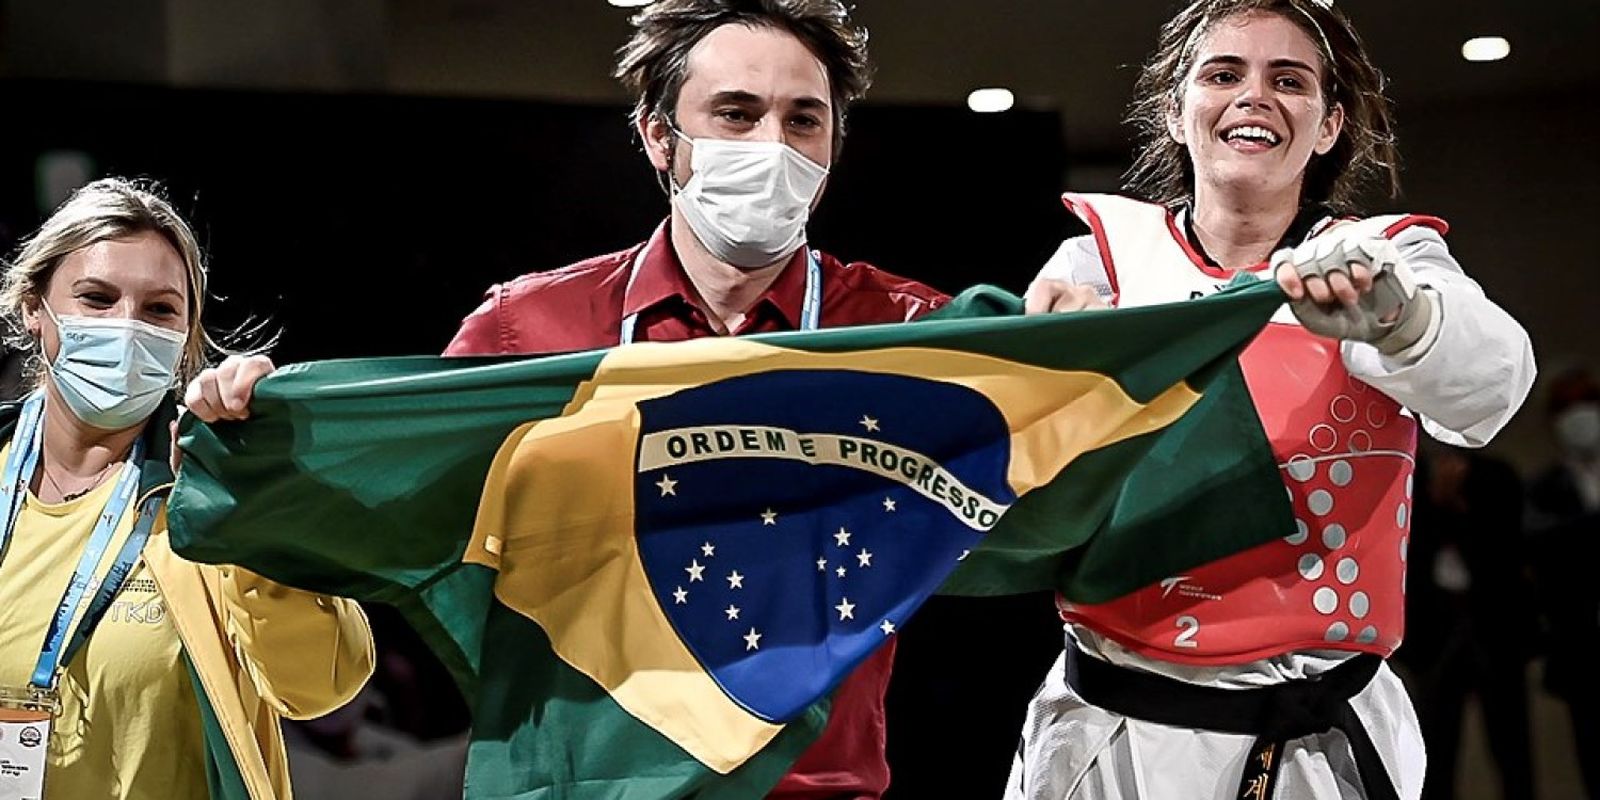 Le Brésil compte désormais deux leaders mondiaux du parataekwondo